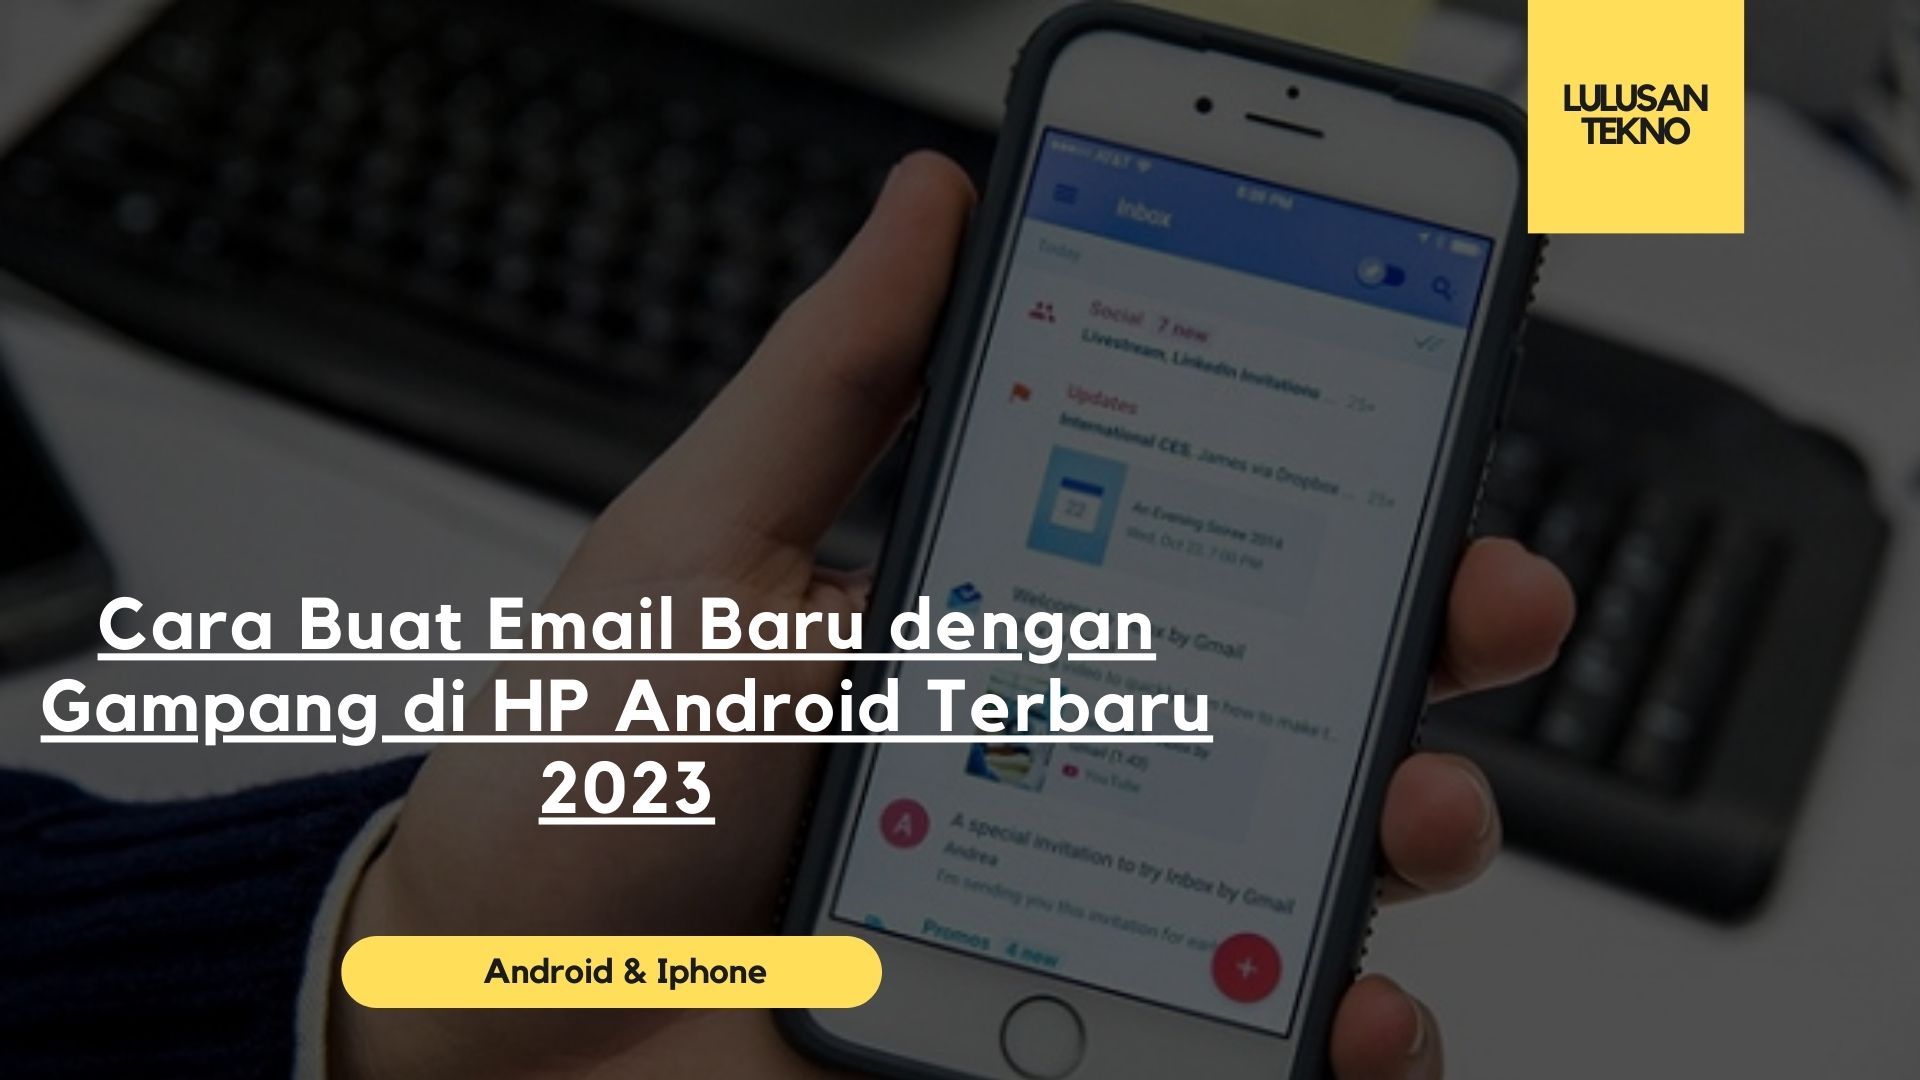 Cara Buat Email Baru dengan Gampang di HP Android Terbaru 2023